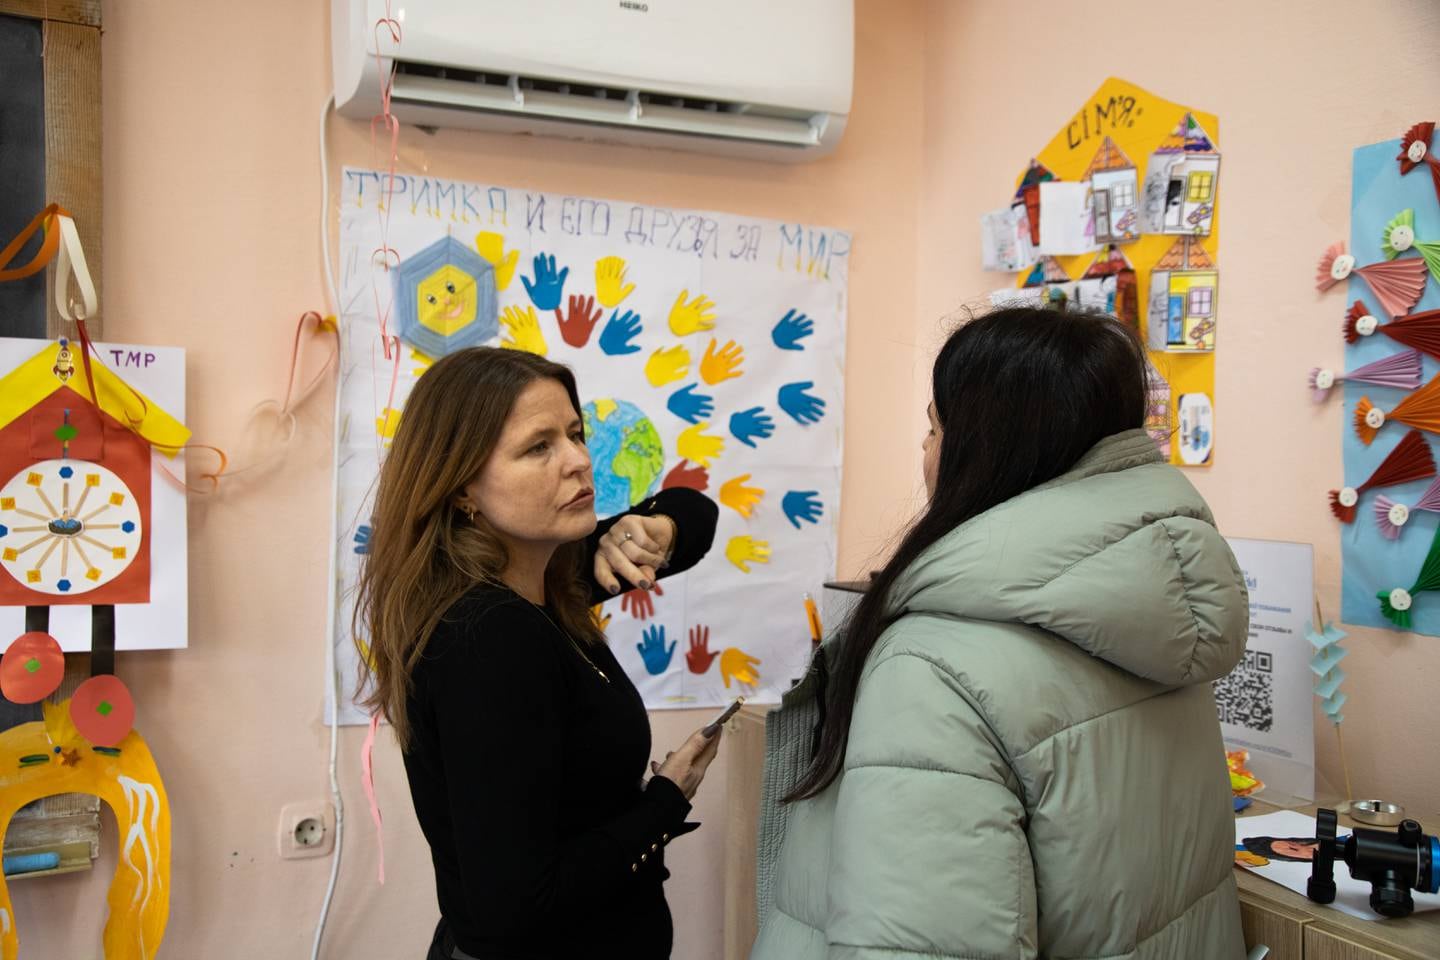 For å kunne beskytte de mest utsatte ukrainske flyktningene, må verdensamfunnets støtte gå til eksisterende tiltak, sier Kari Helene Partapuoli, generalsekretær i Plan Norge. Her fra et besøk på et flykningmottak i Moldovas hovedstad.